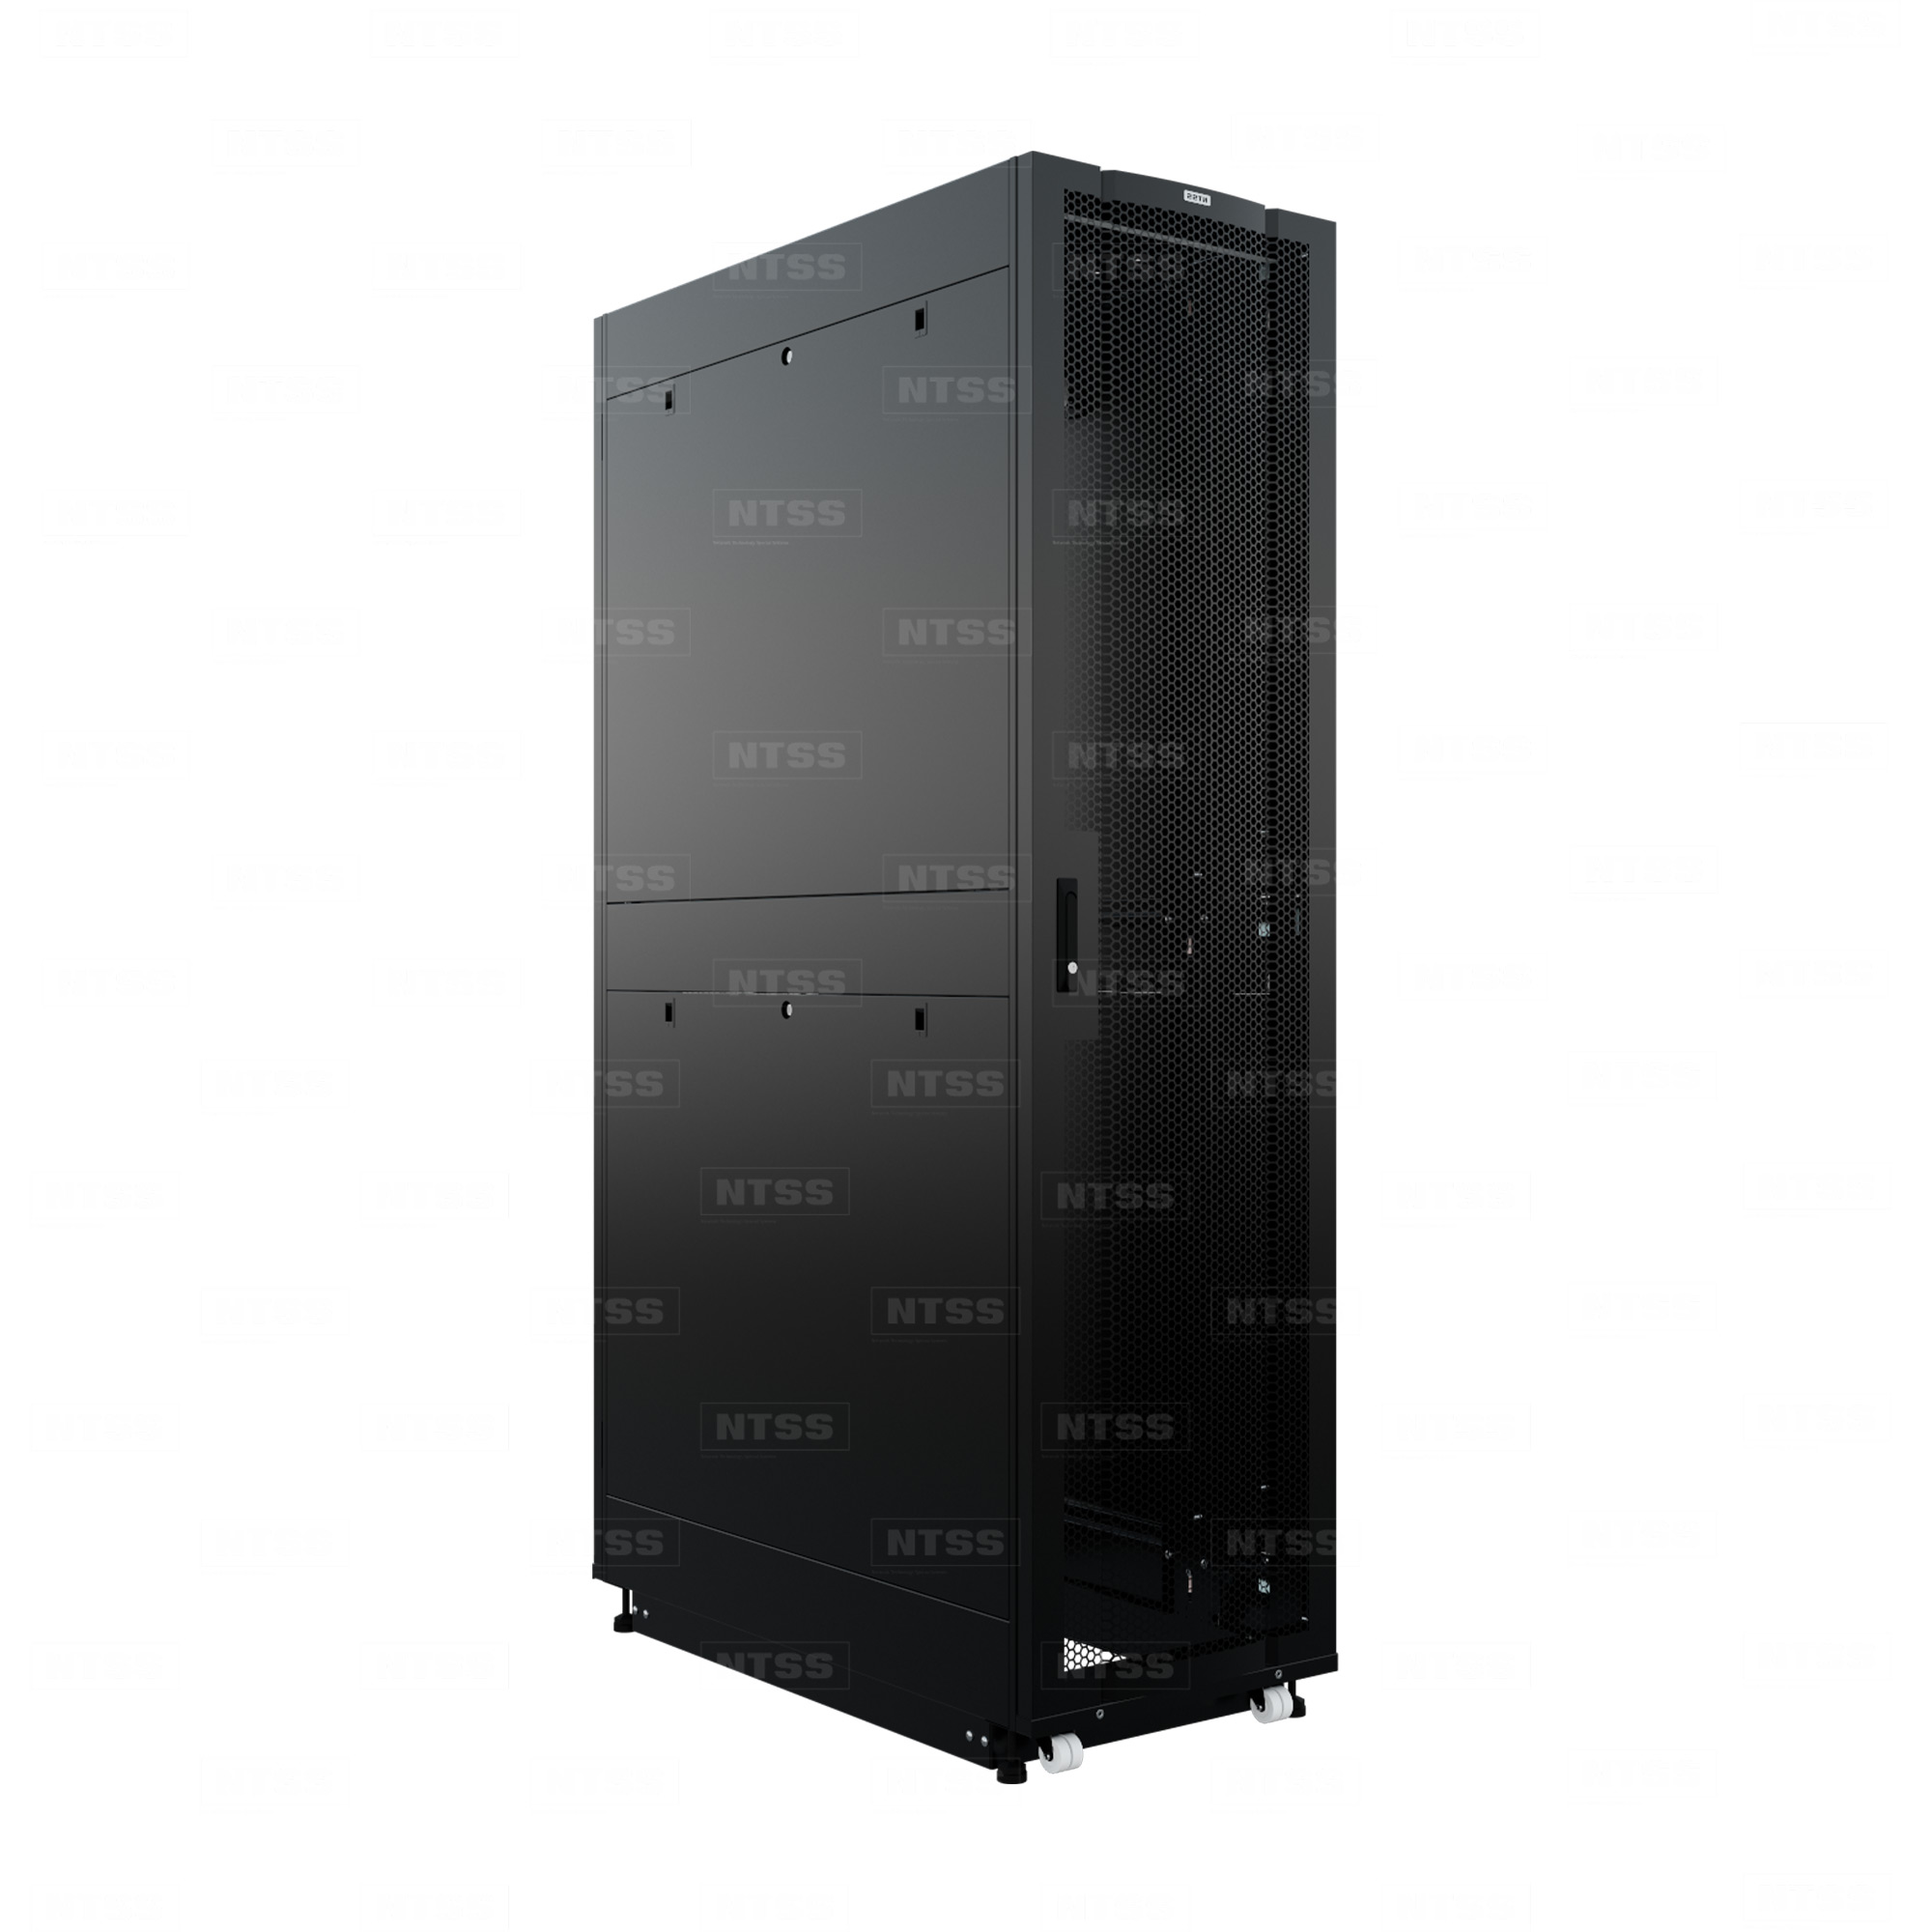 19" Напольный серверный шкаф NTSS ПРОЦОД PC МАСТЕР 48U 600х1200 мм, сварной в сборе, передняя дверь перфорация, задняя дверь распашная двойная перфорированная, боковые стенки, регулируемые опоры, ролики, черный RAL 9005